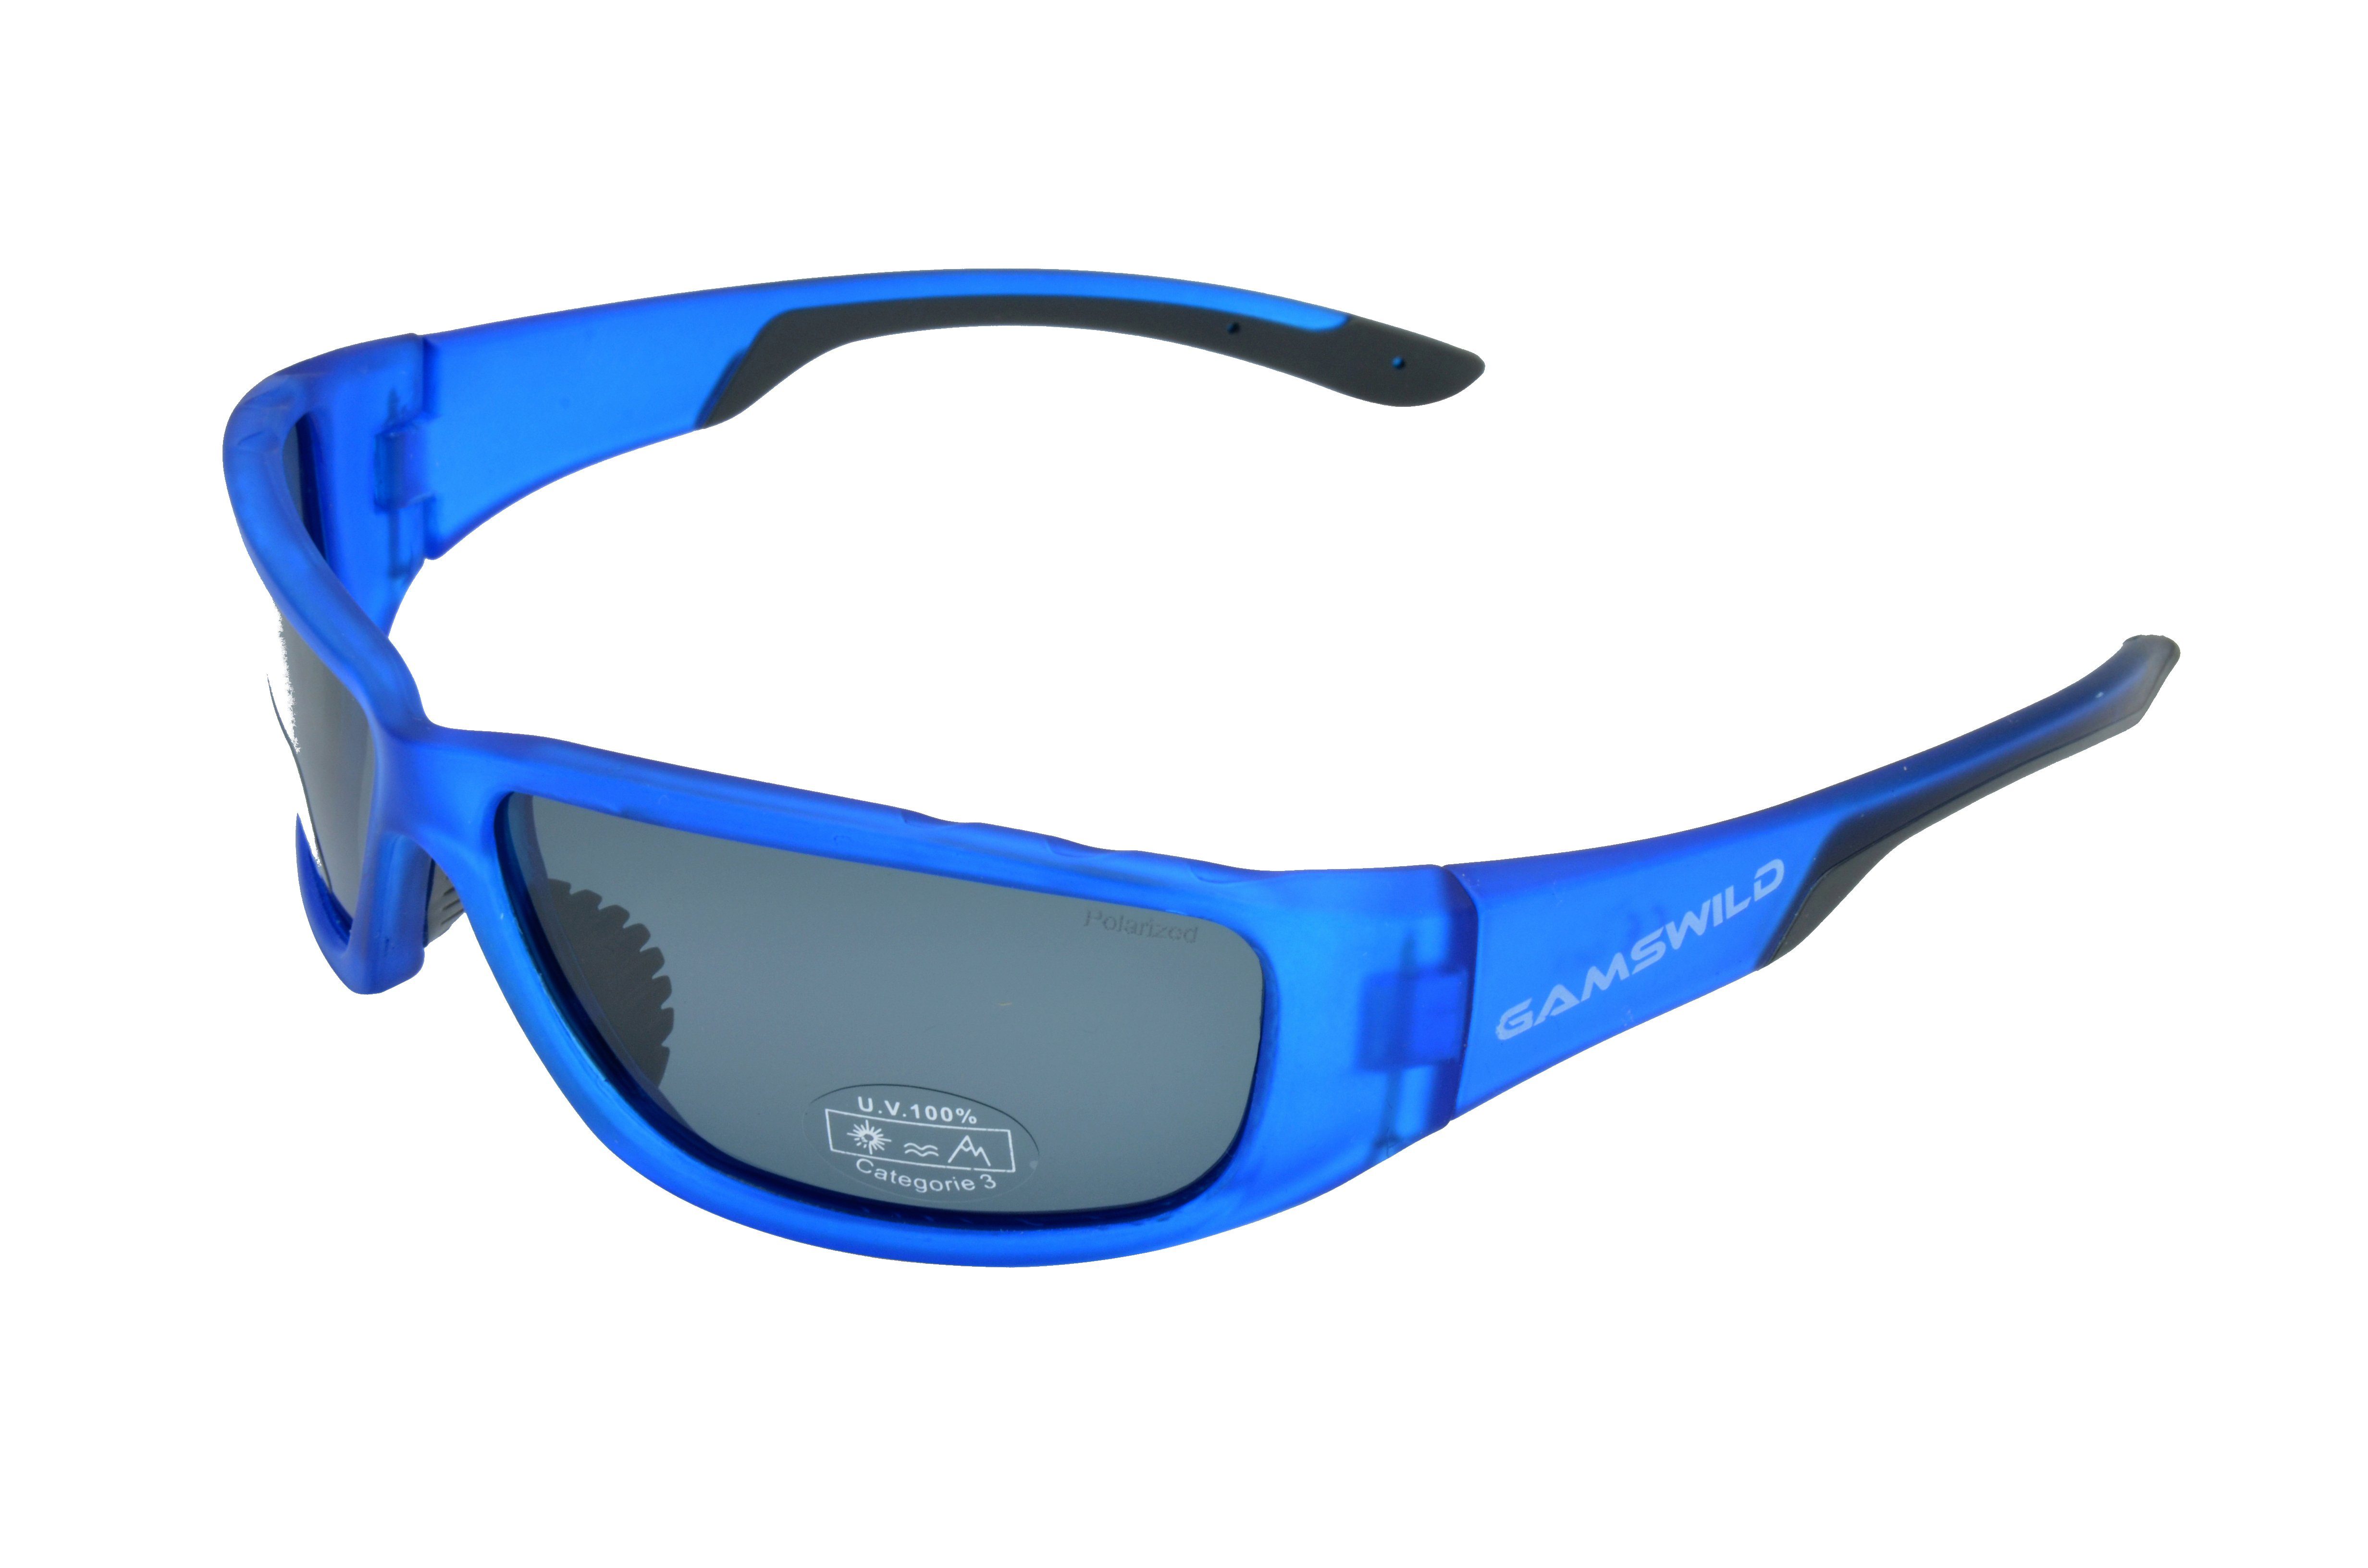 Gamswild Sonnenbrille »WS9331 Sportbrille Damen Herren Fahrradbrille  Skibrille Unisex polarisiert rot, grün, blau« halbtransparente Fassung  online kaufen | OTTO